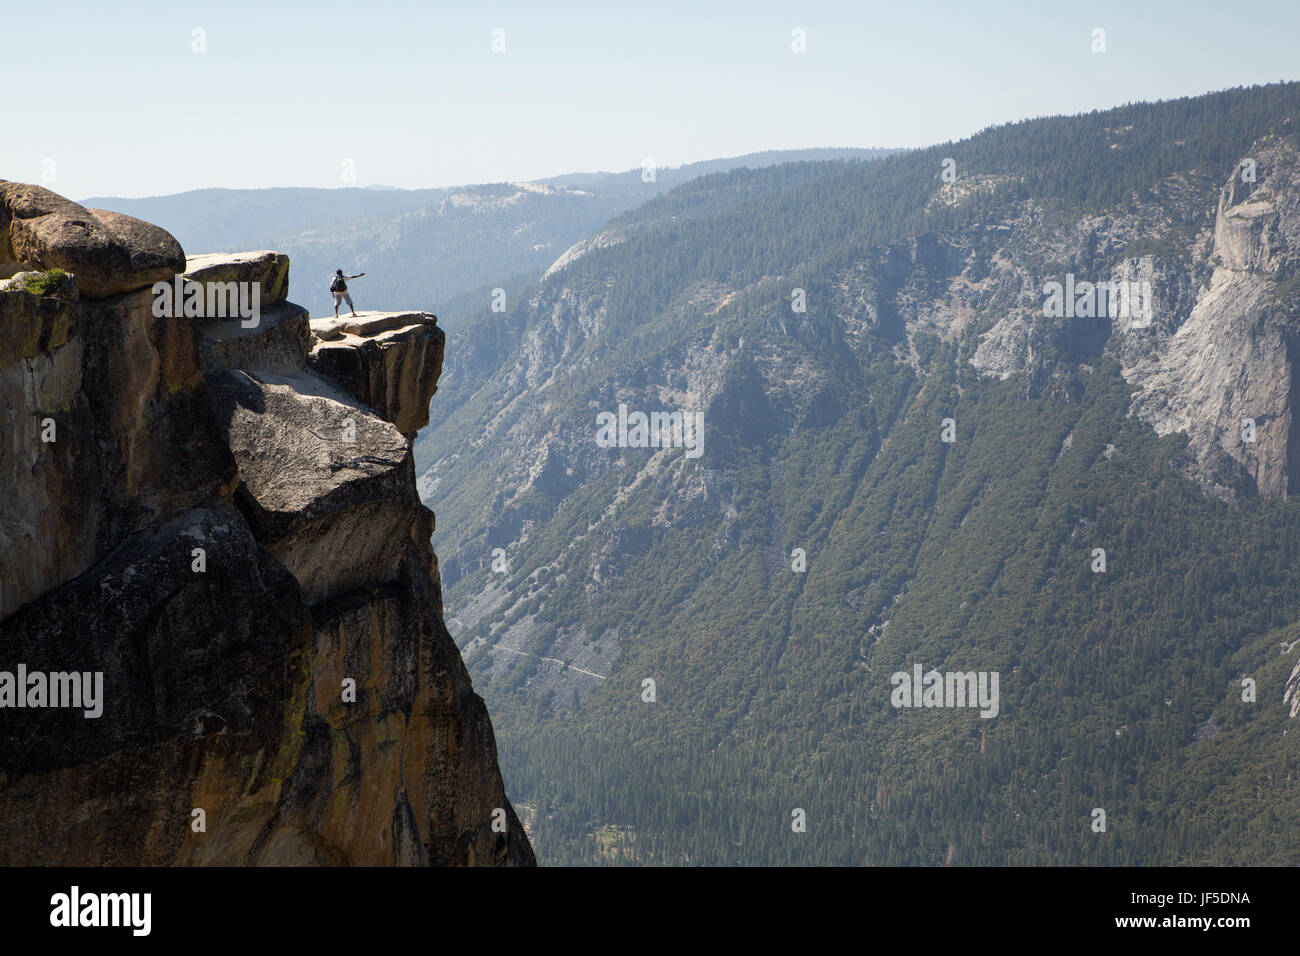 Un visitatore di Yosemite National Park sorge su una sporgenza di roccia a Taft Point. Questa battuta ad una quota di circa 7.500 piedi, sorge a migliaia di metri sopra la valle di Yosemite. Foto Stock